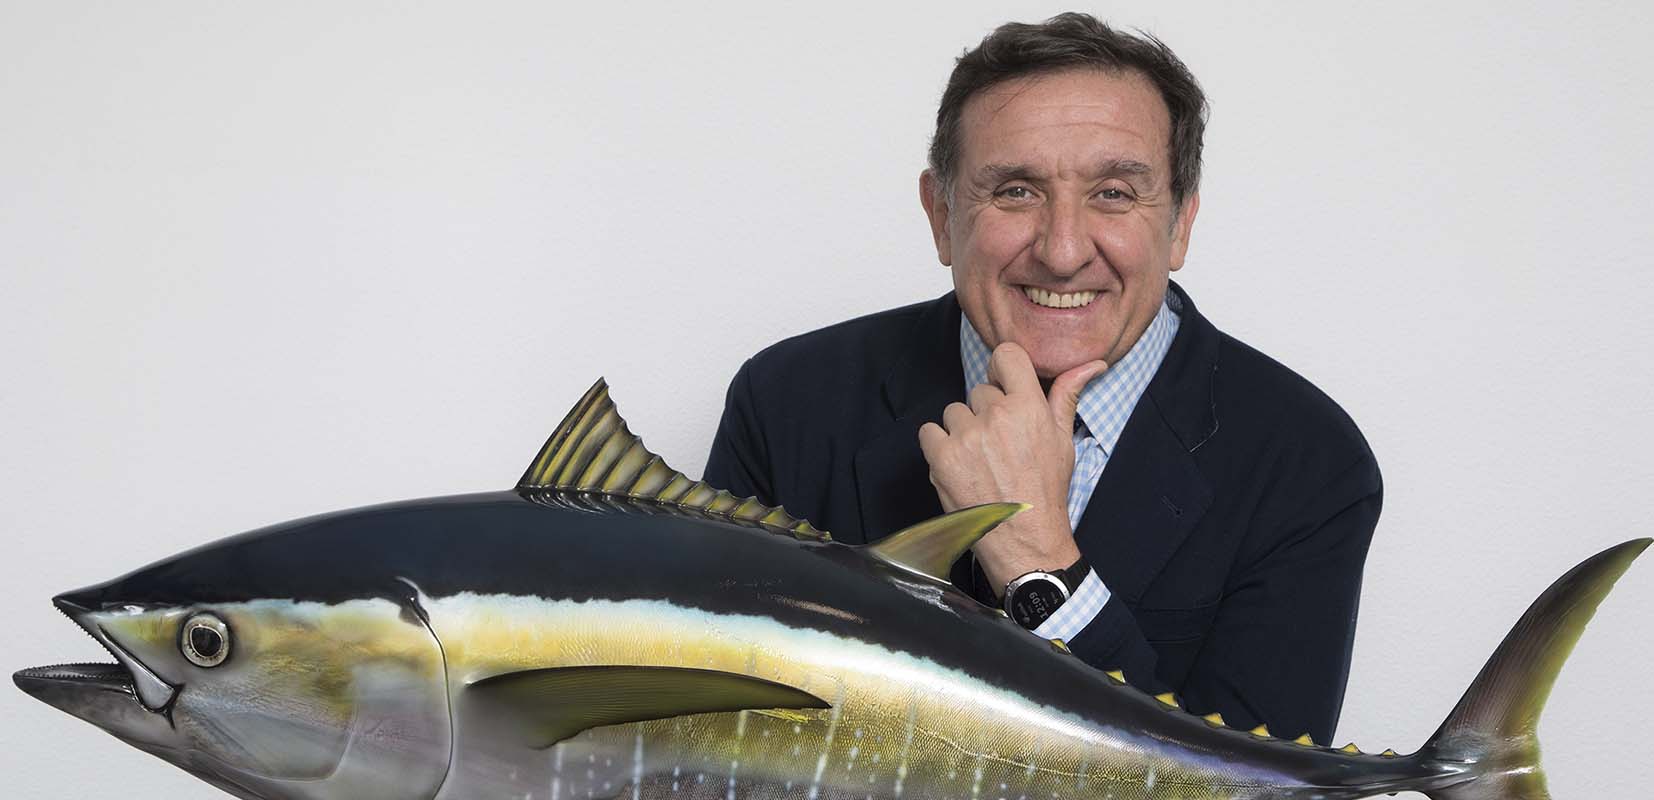 Cartel promocional de la campaña Llévate pescado de Pesca España